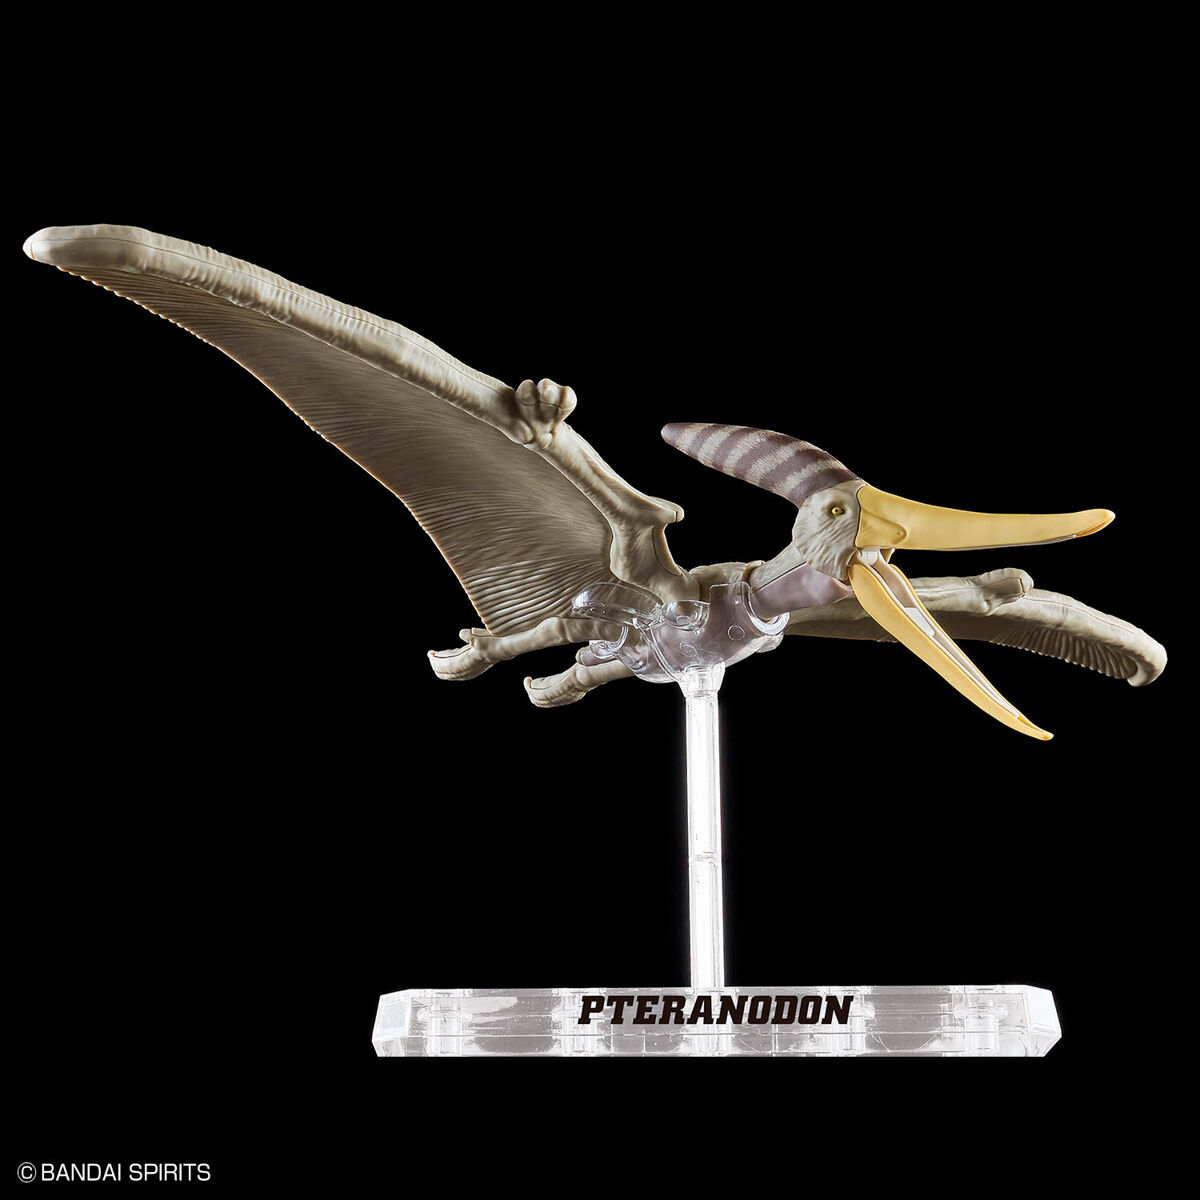 プラノサウルス プテラノドン - ウインドウを閉じる